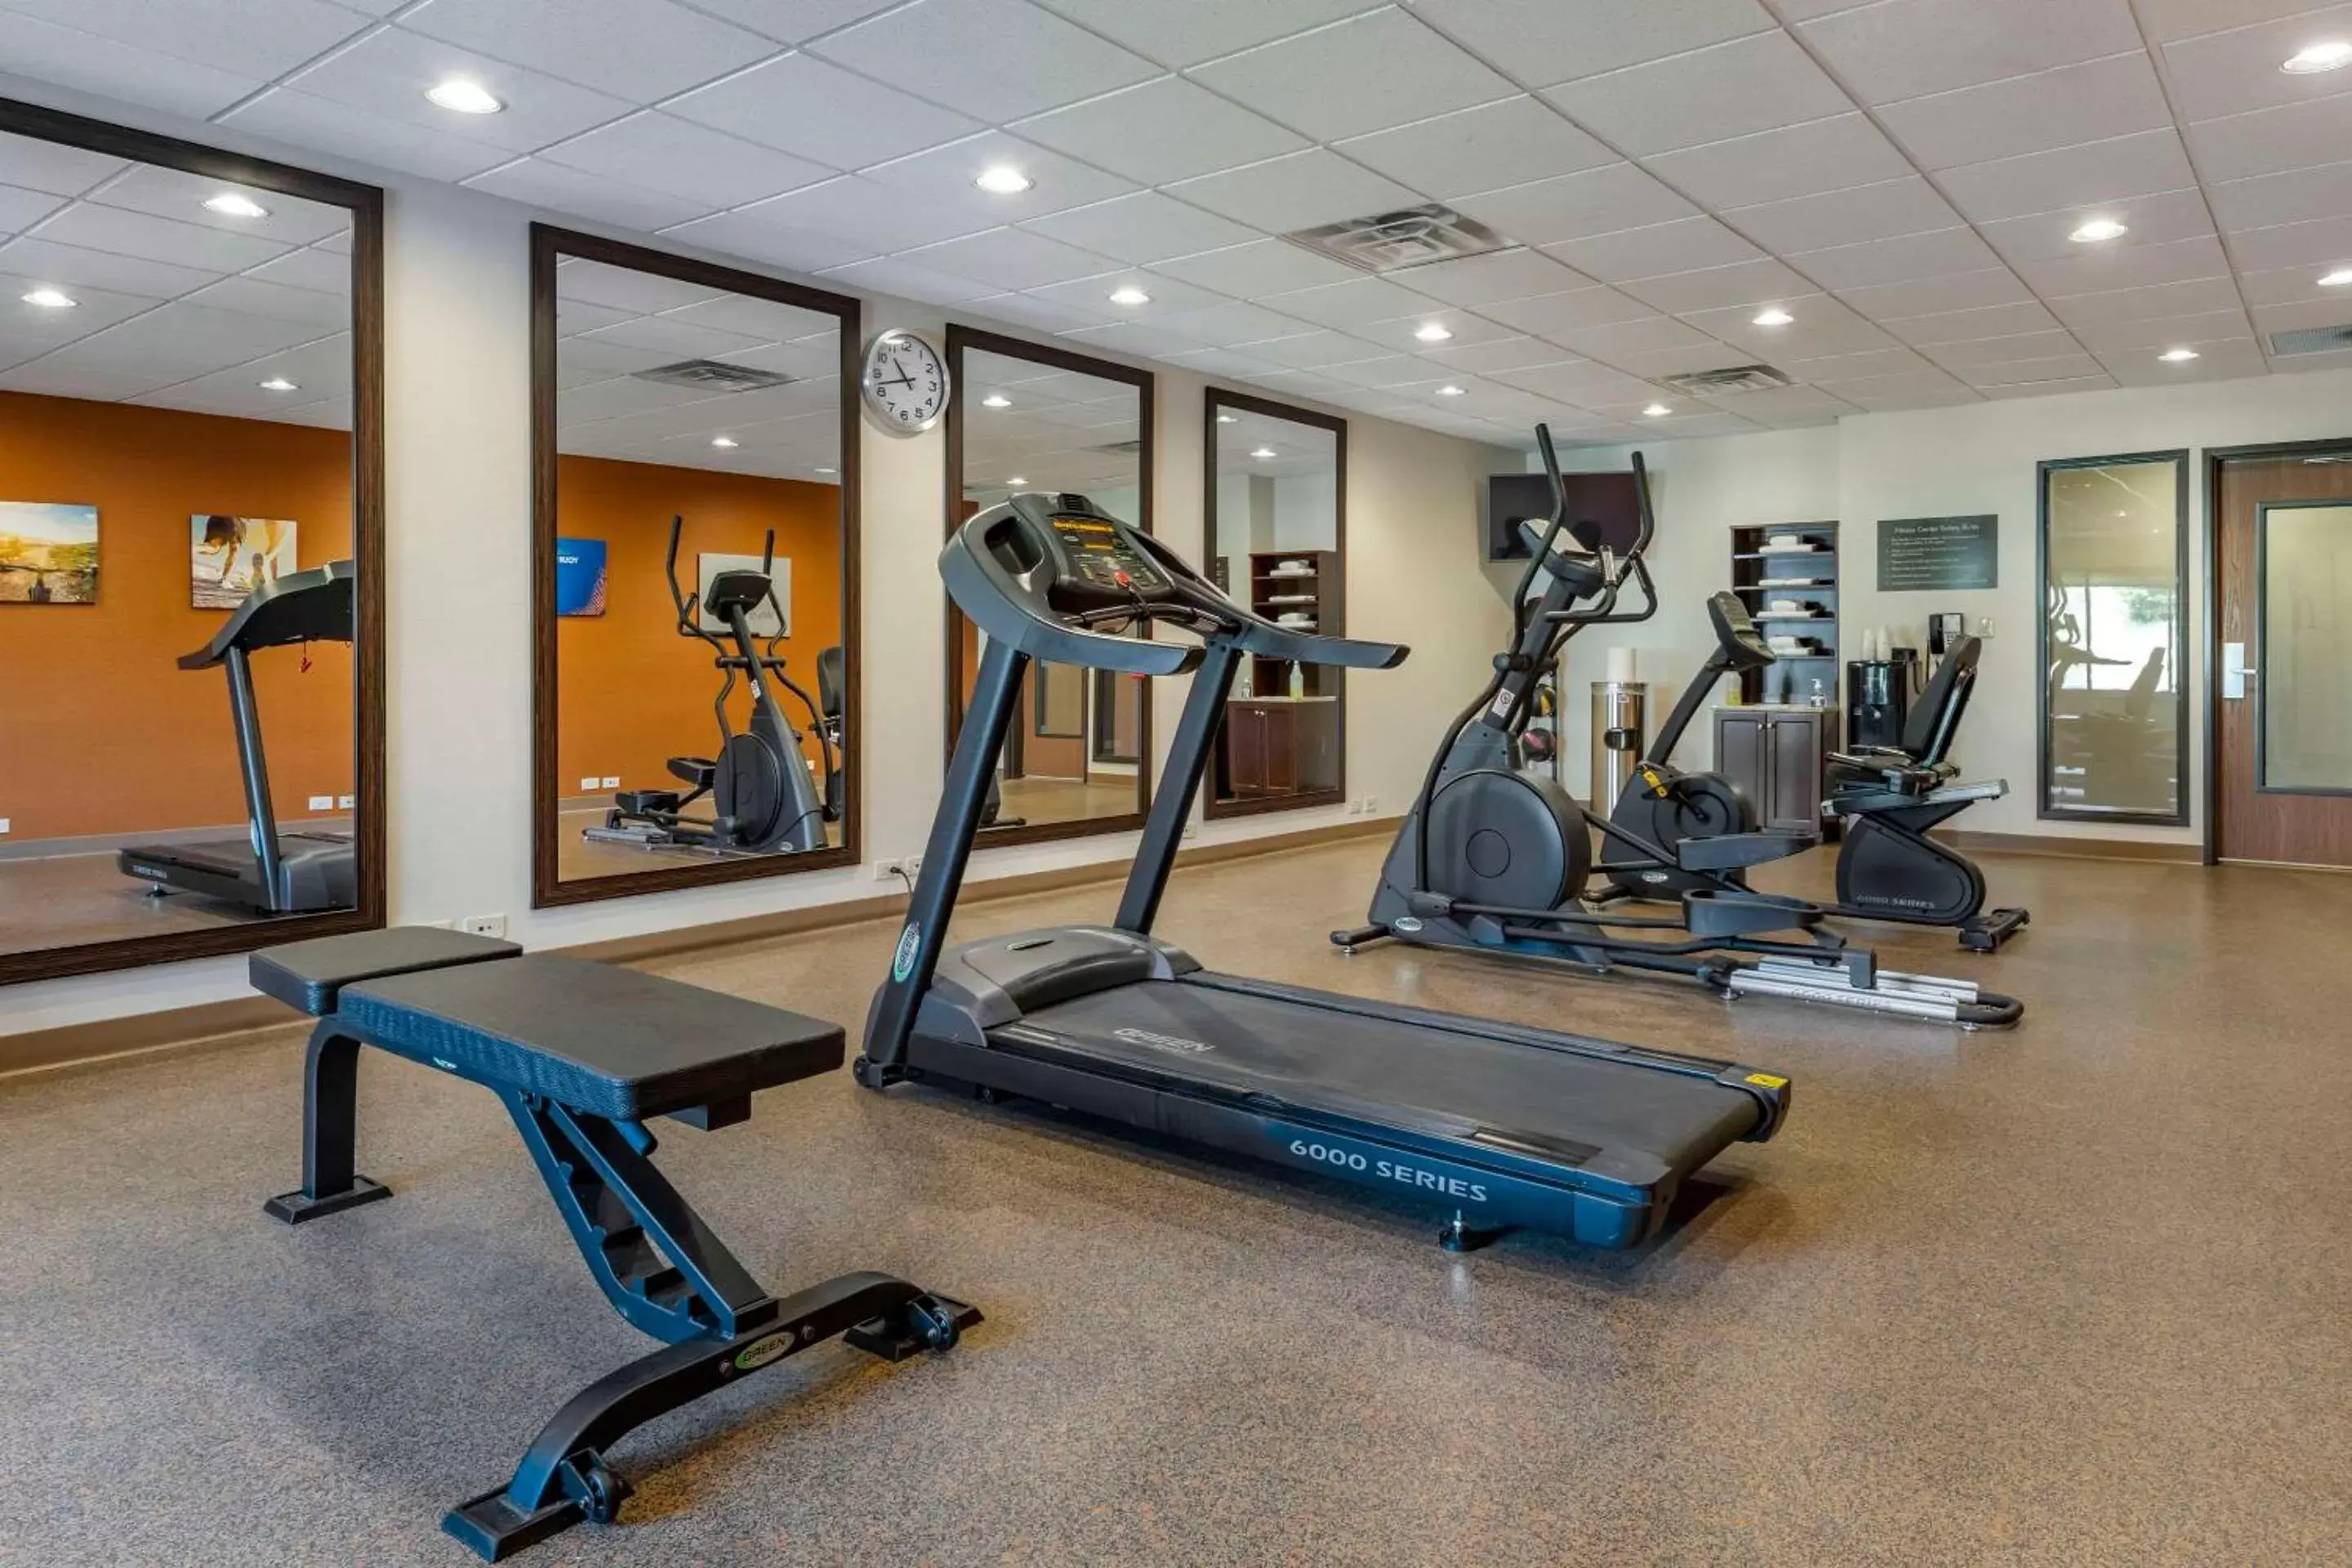 Fitness centre/facilities, Fitness Center/Facilities in Comfort Suites Bridgeport - Clarksburg